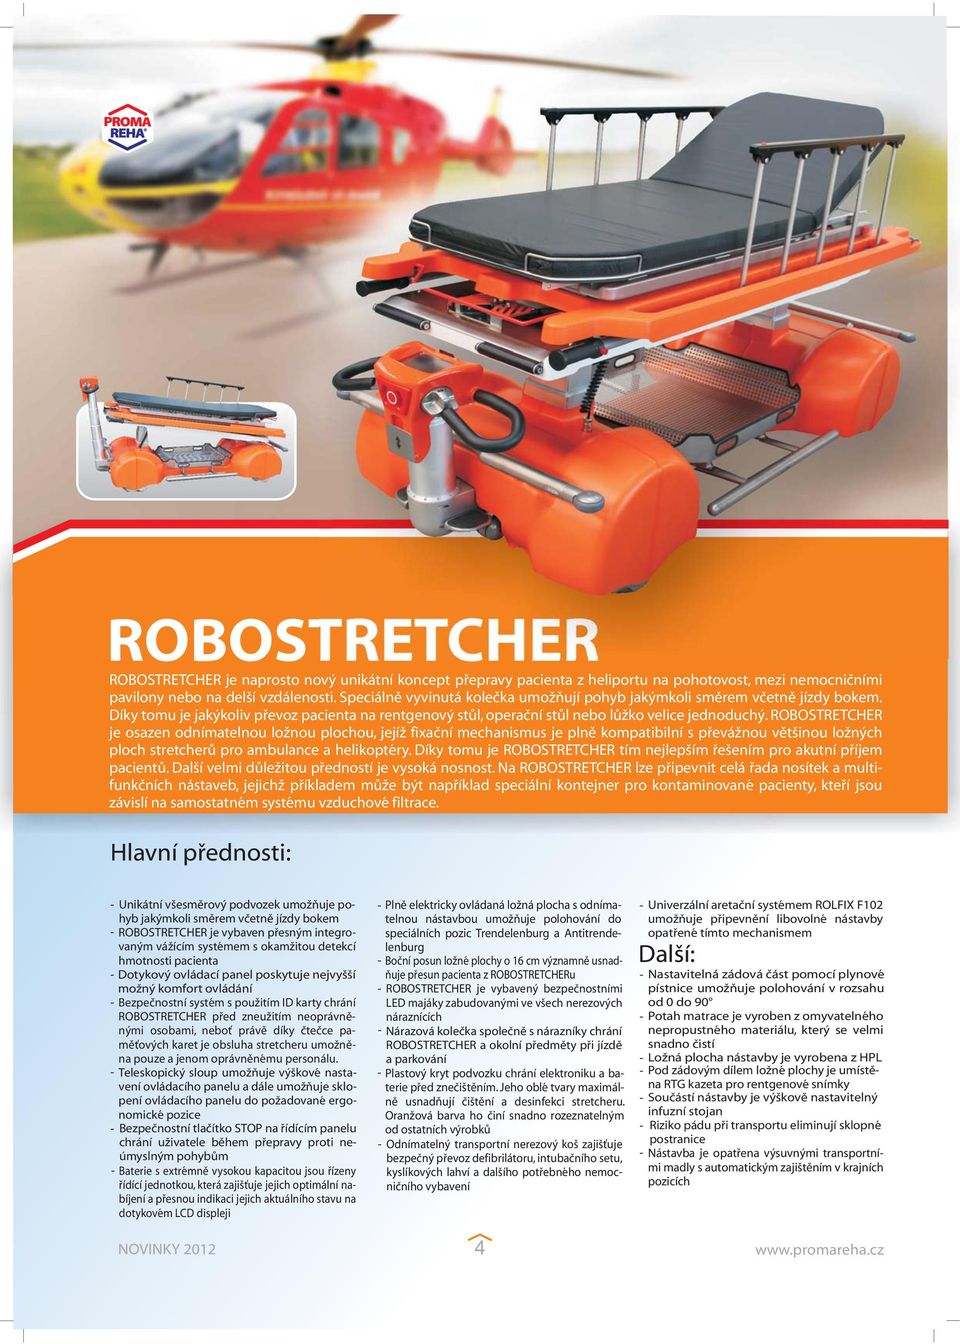 ROBOSTRETCHER je osazen odnímatelnou ložnou plochou, jejíž fixační mechanismus je plně kompatibilní s převážnou většinou ložných ploch stretcherů pro ambulance a helikoptéry.